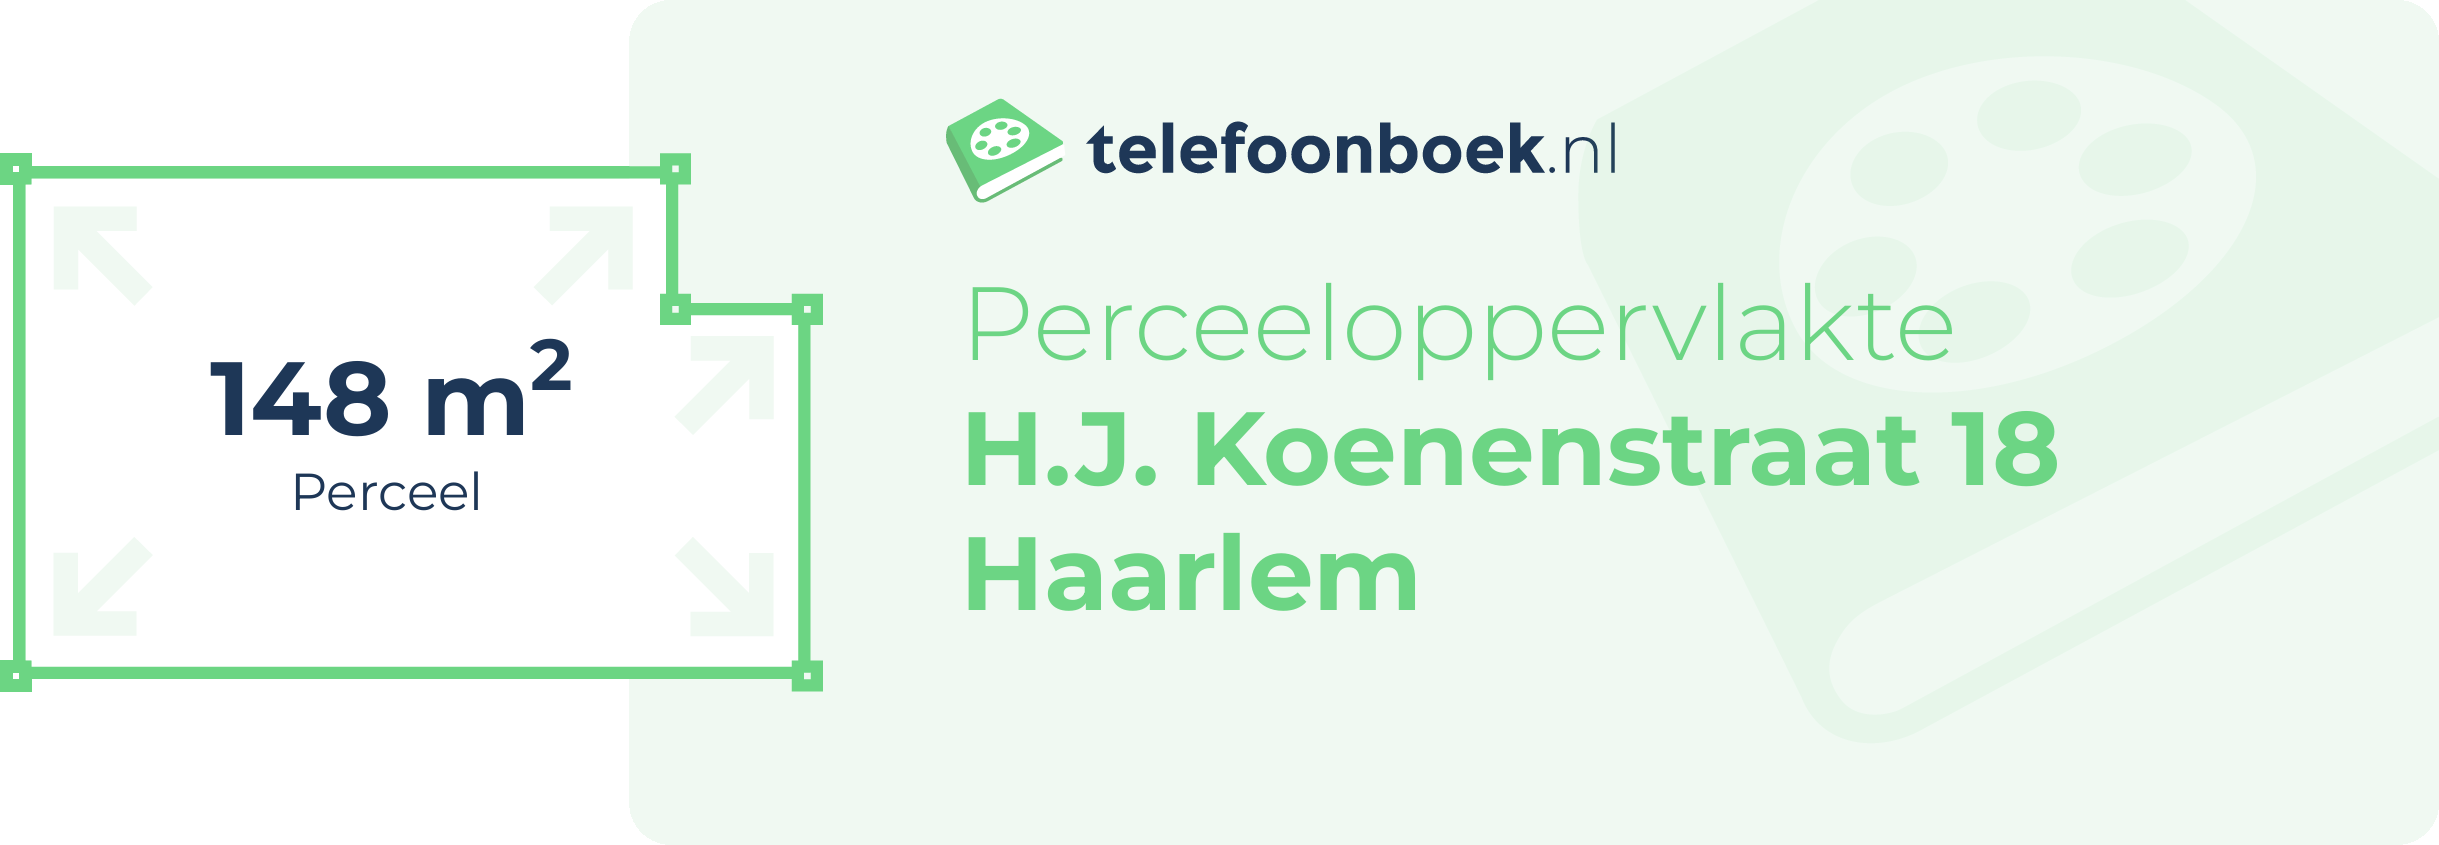 Perceeloppervlakte H.J. Koenenstraat 18 Haarlem